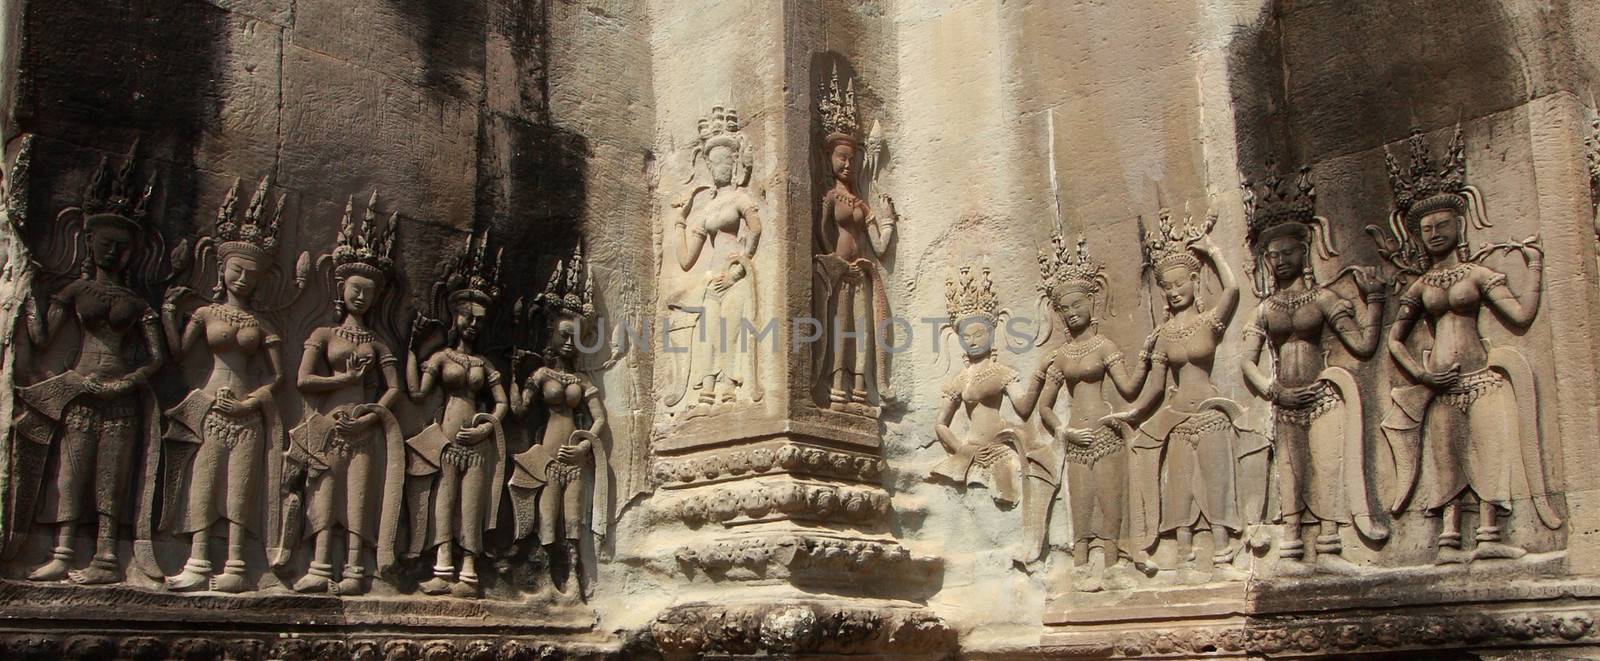 Apsara all around on the wall at Angkor wat. 